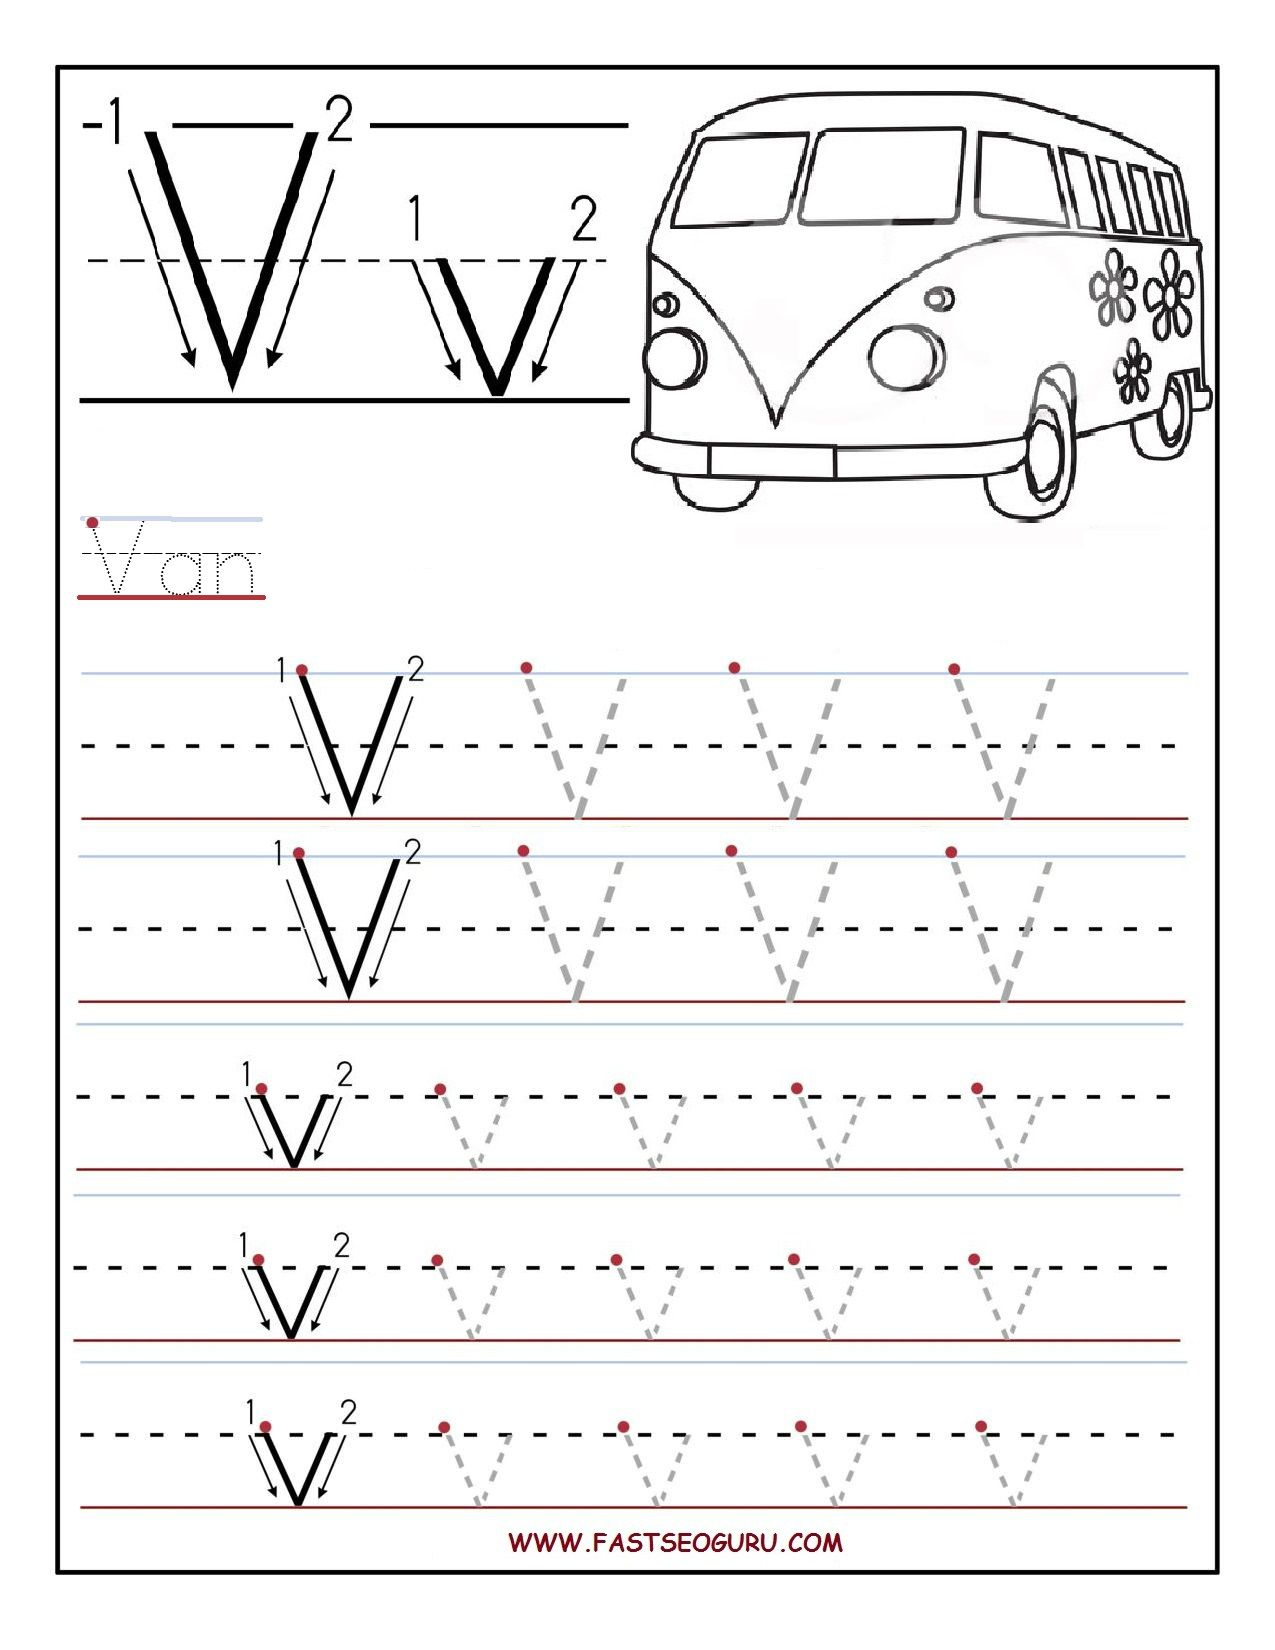 Printable Letter V Tracing Worksheets For Preschool Alphabet 